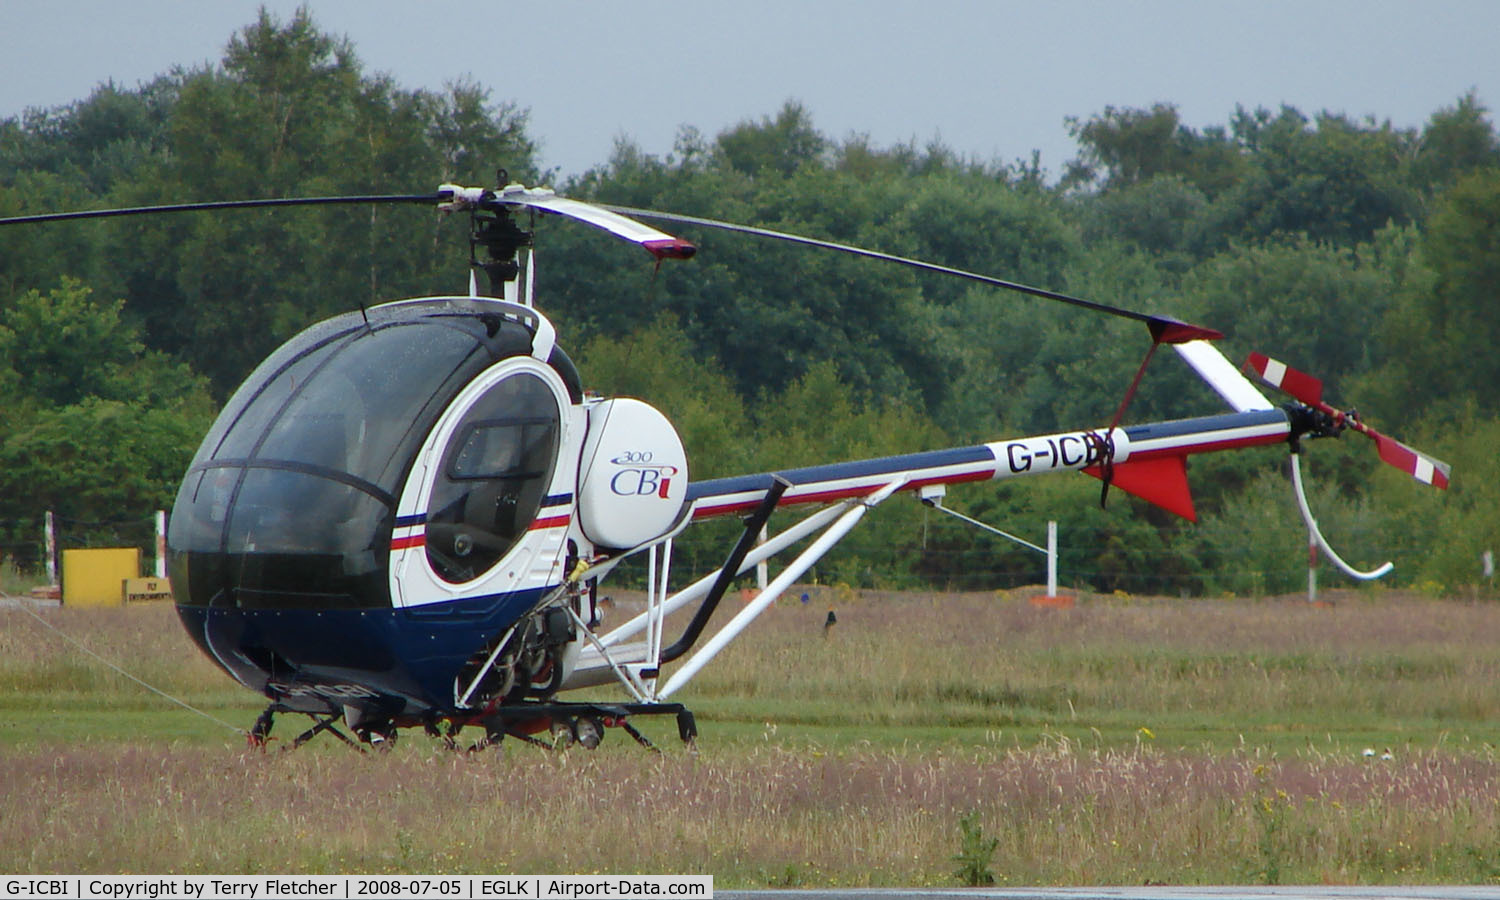 G-ICBI, 2007 Schweizer 269C-1 C/N 0272, Schweizer 269C-1 helicopter at Blackbushe